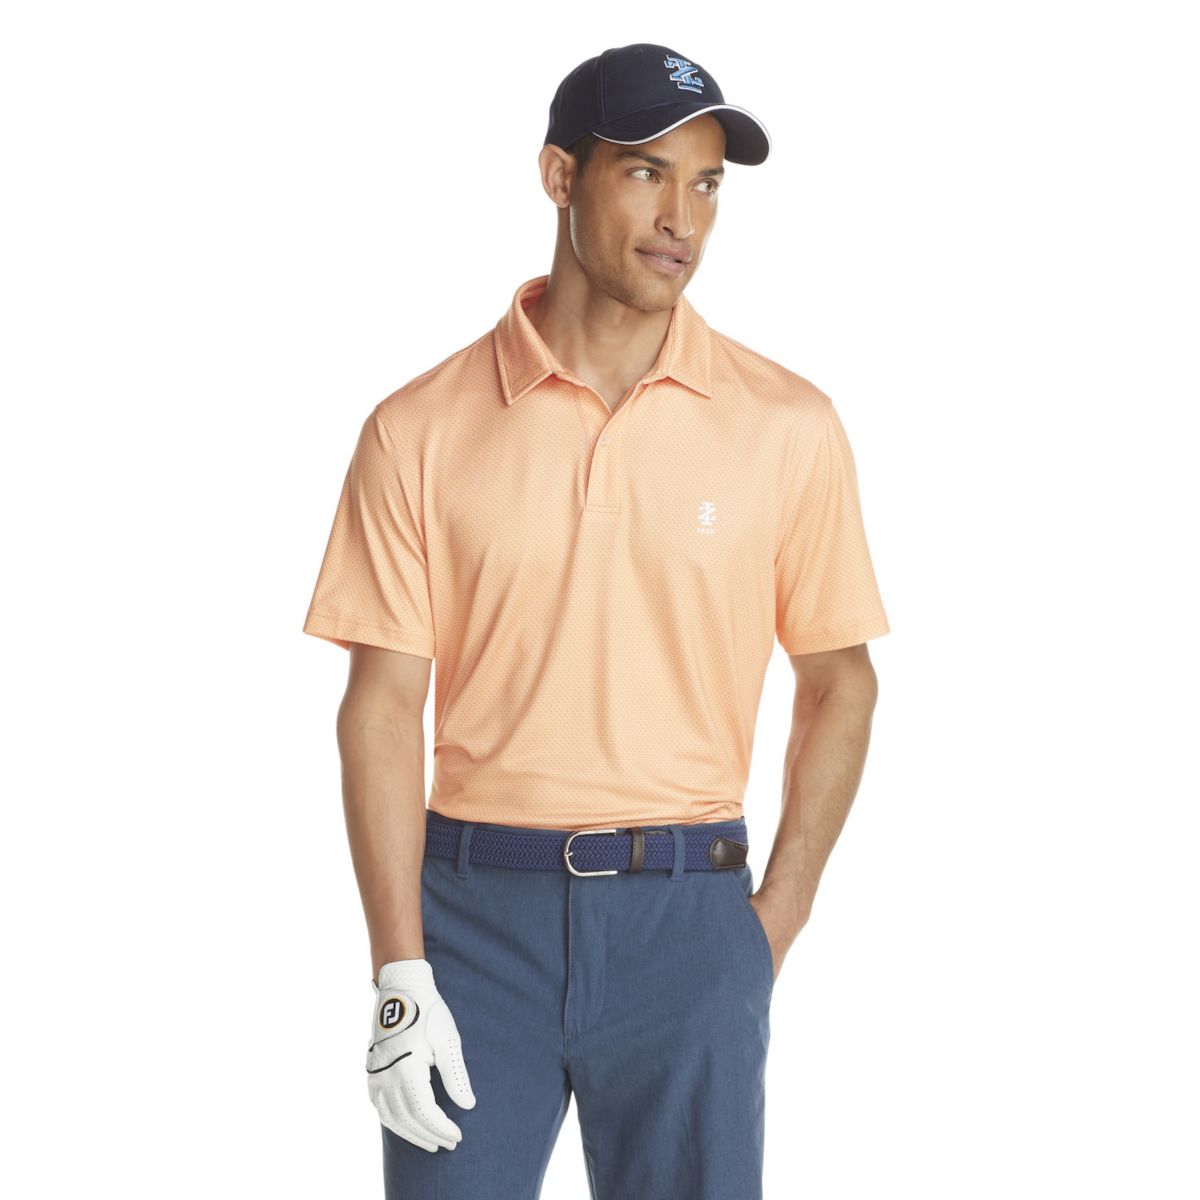 Мужская футболка-поло для гольфа классического кроя с узором IZOD IZOD